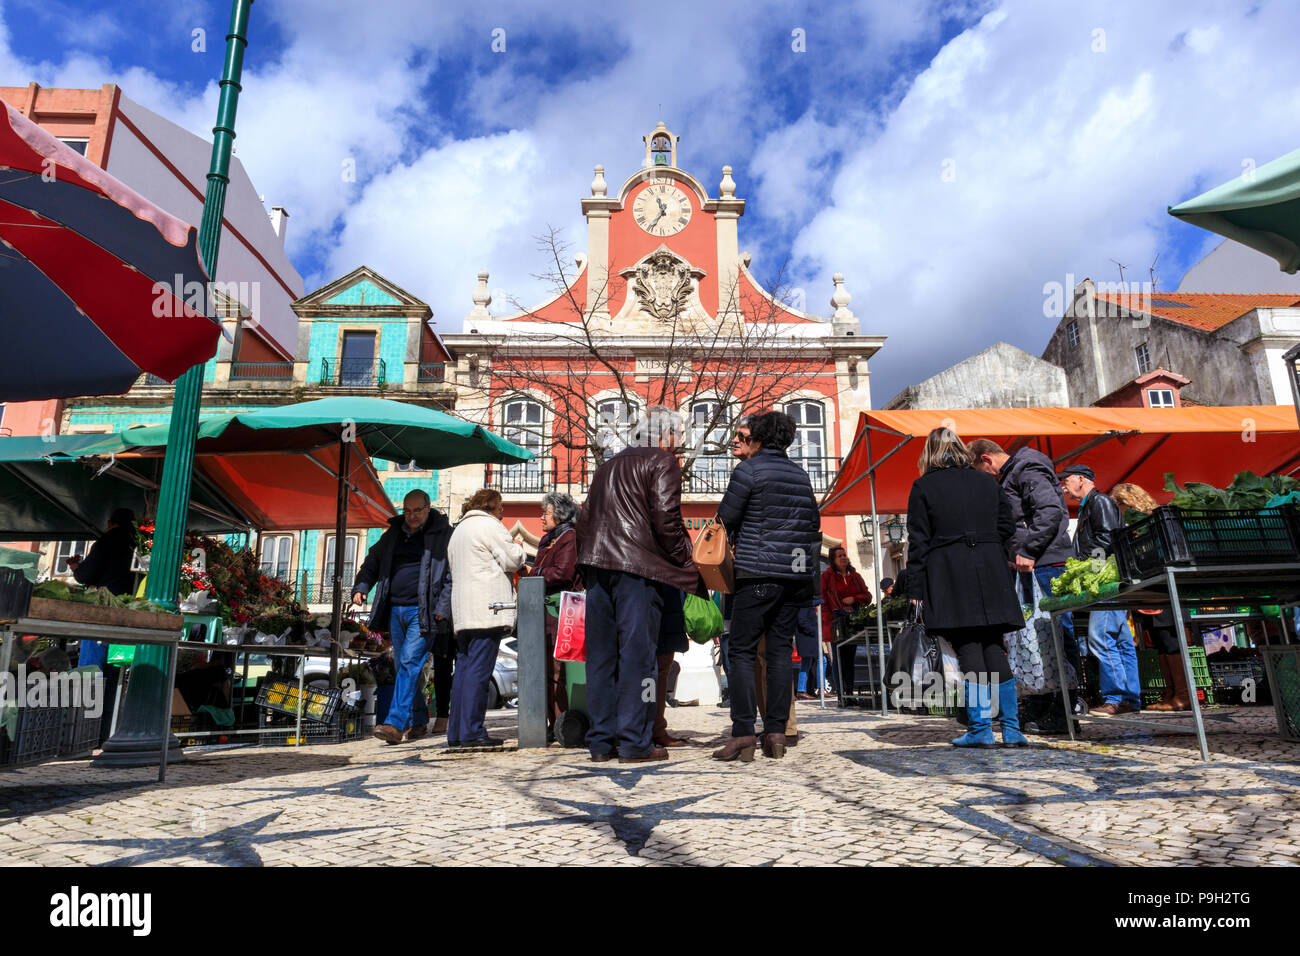 Shoppers standing around and chatting at the Praca da Fruta market place, Caldas da Rainha Portugal Stock Photo